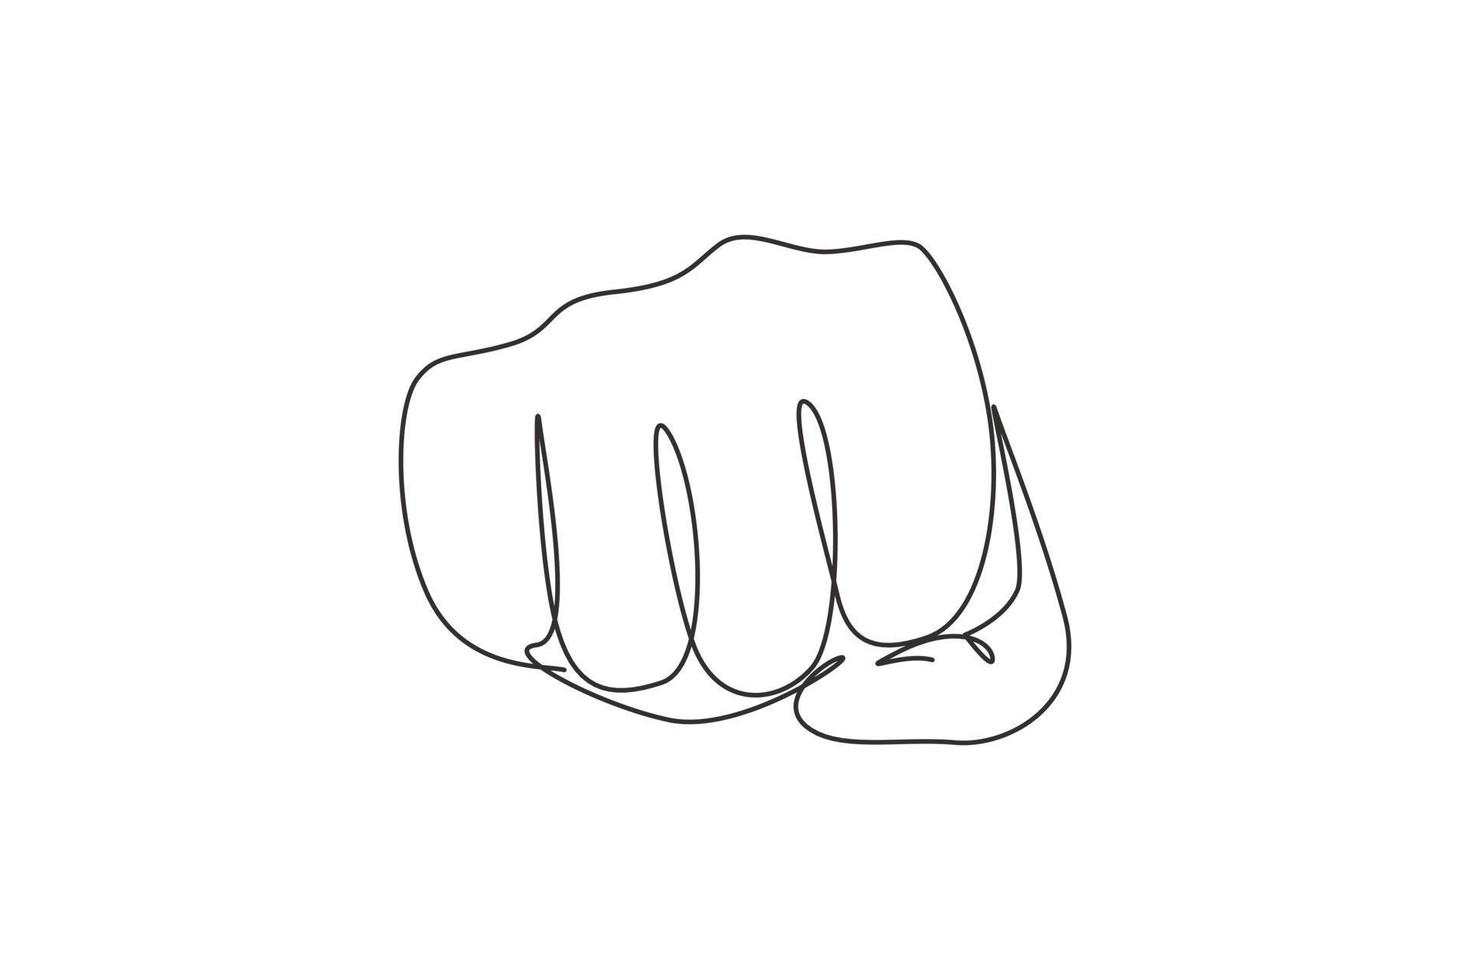 Continuo dibujo de una línea, puñetazo, puño, gesto de la mano. signo o símbolo de poder, golpe, ataque, fuerza. comunicación con gestos con las manos. signos no verbales. Ilustración gráfica de vector de diseño de línea única